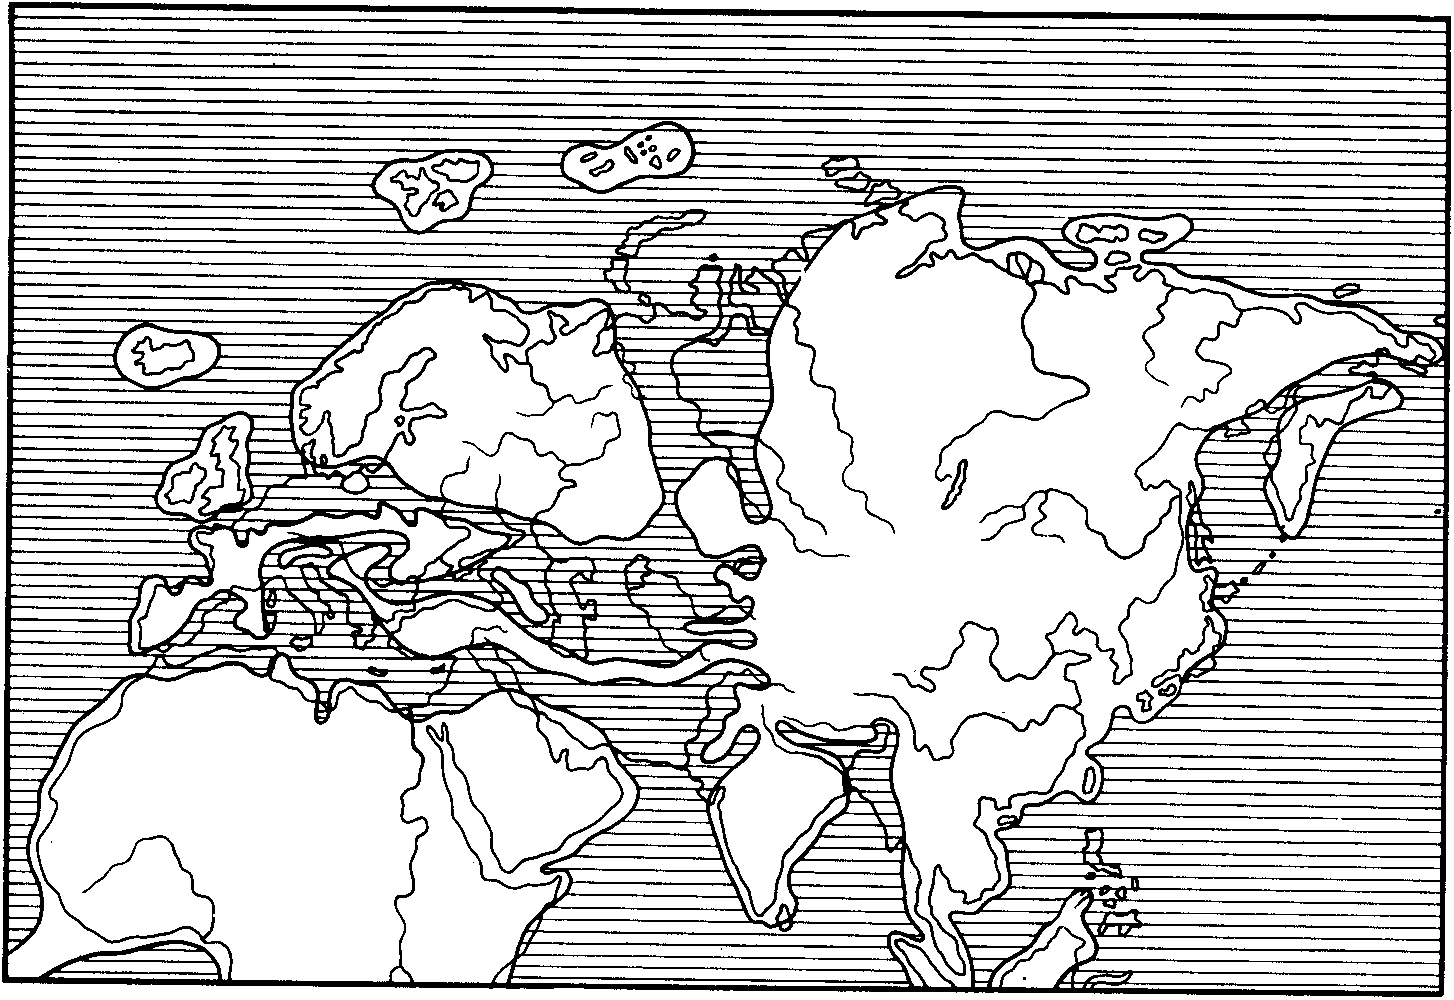 Рис. 20. Схематическая палеогеографическая карта середины олигоцена (по Термье, 1952)